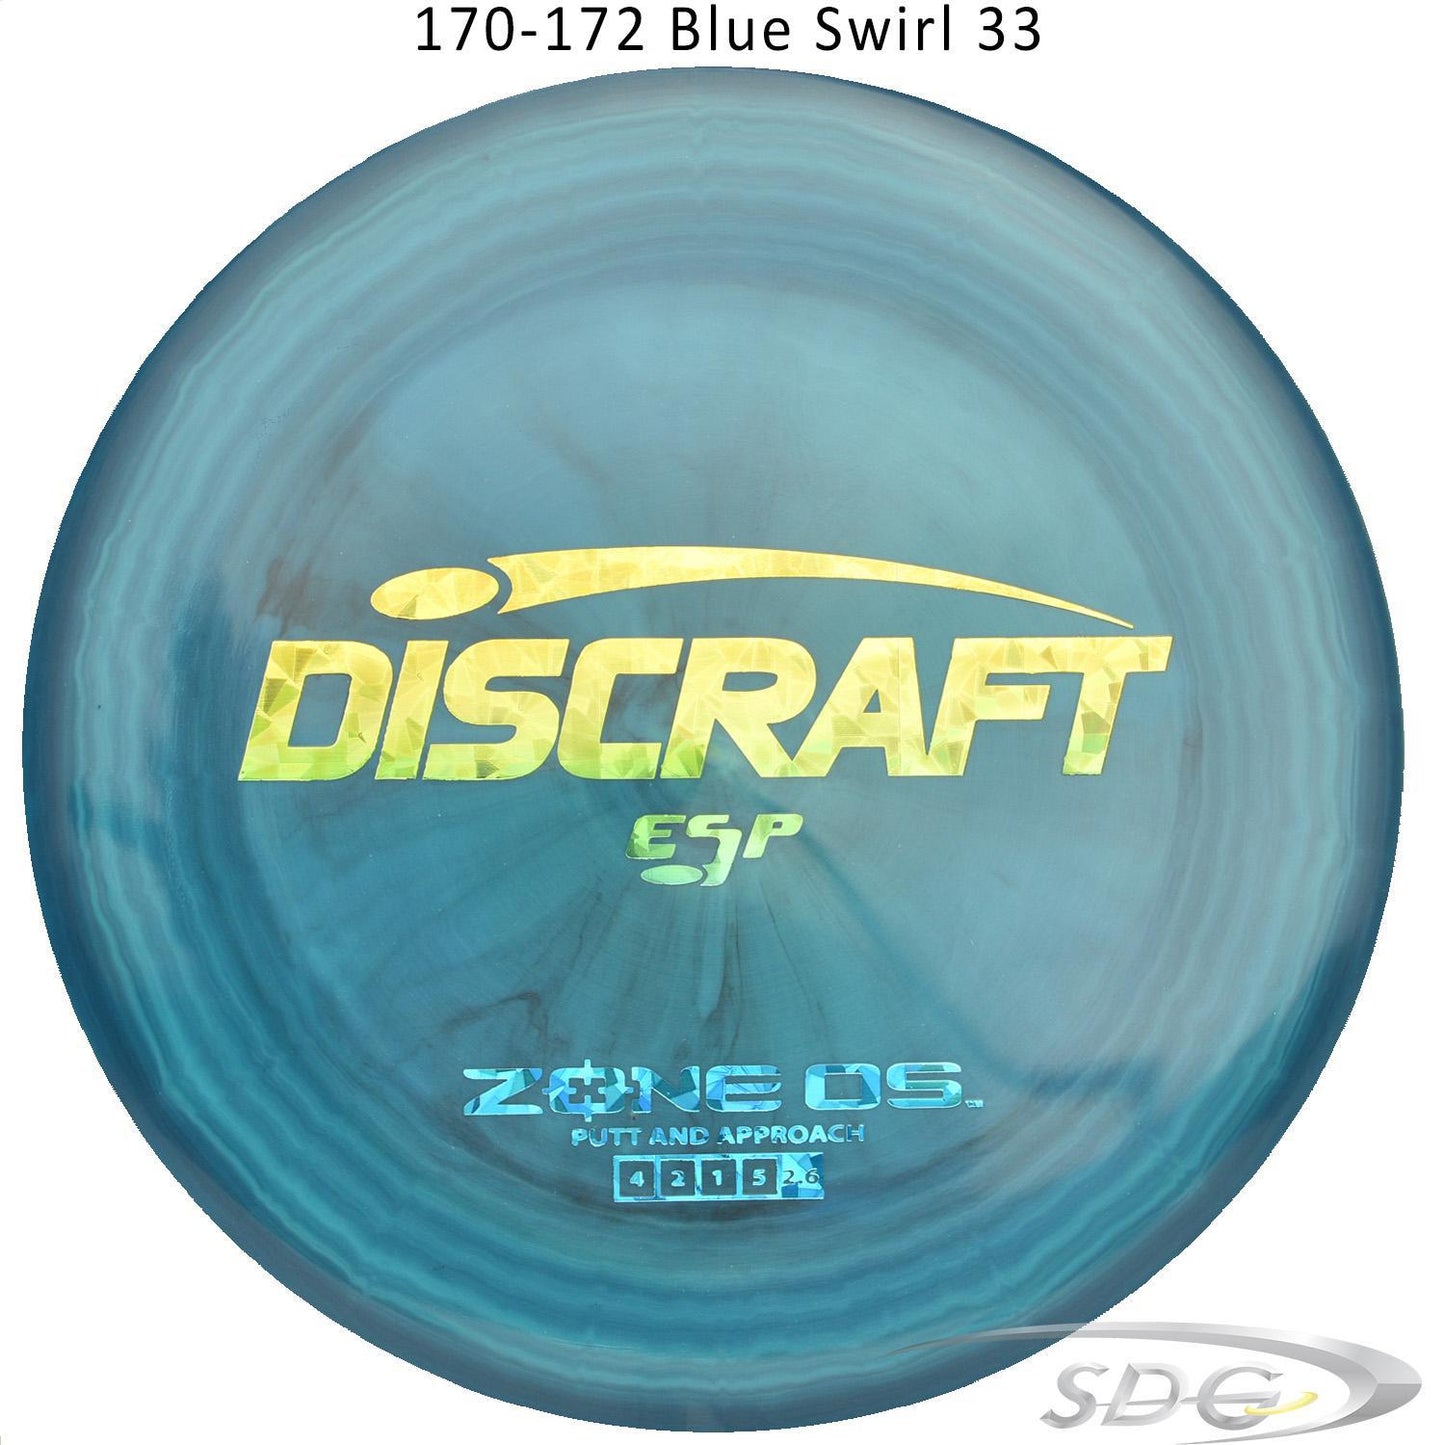 discraft-esp-zone-os-disc-golf-putter 170-172 Blue Swirl 33